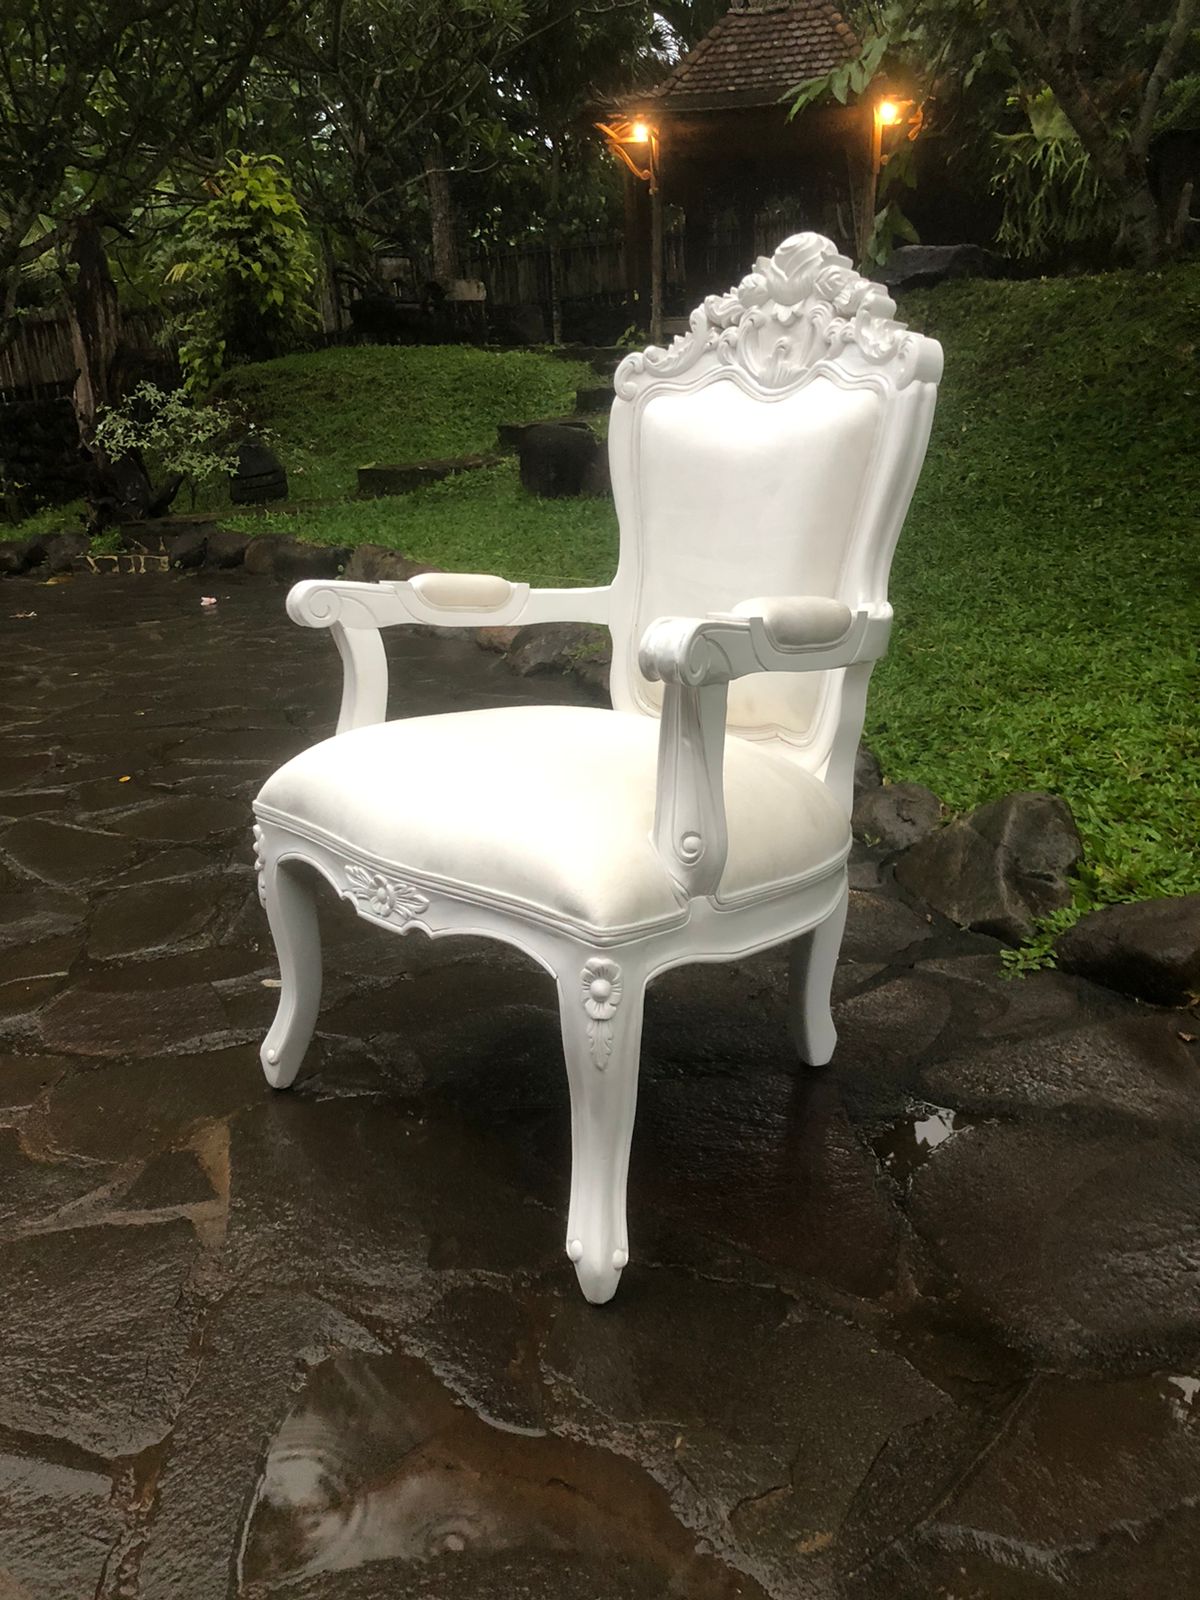 כורסא עץ מלא מהגוני גימור לבן מט ריפוד קטיפה לבו במחיר מבצע: 2,400 ש"ח